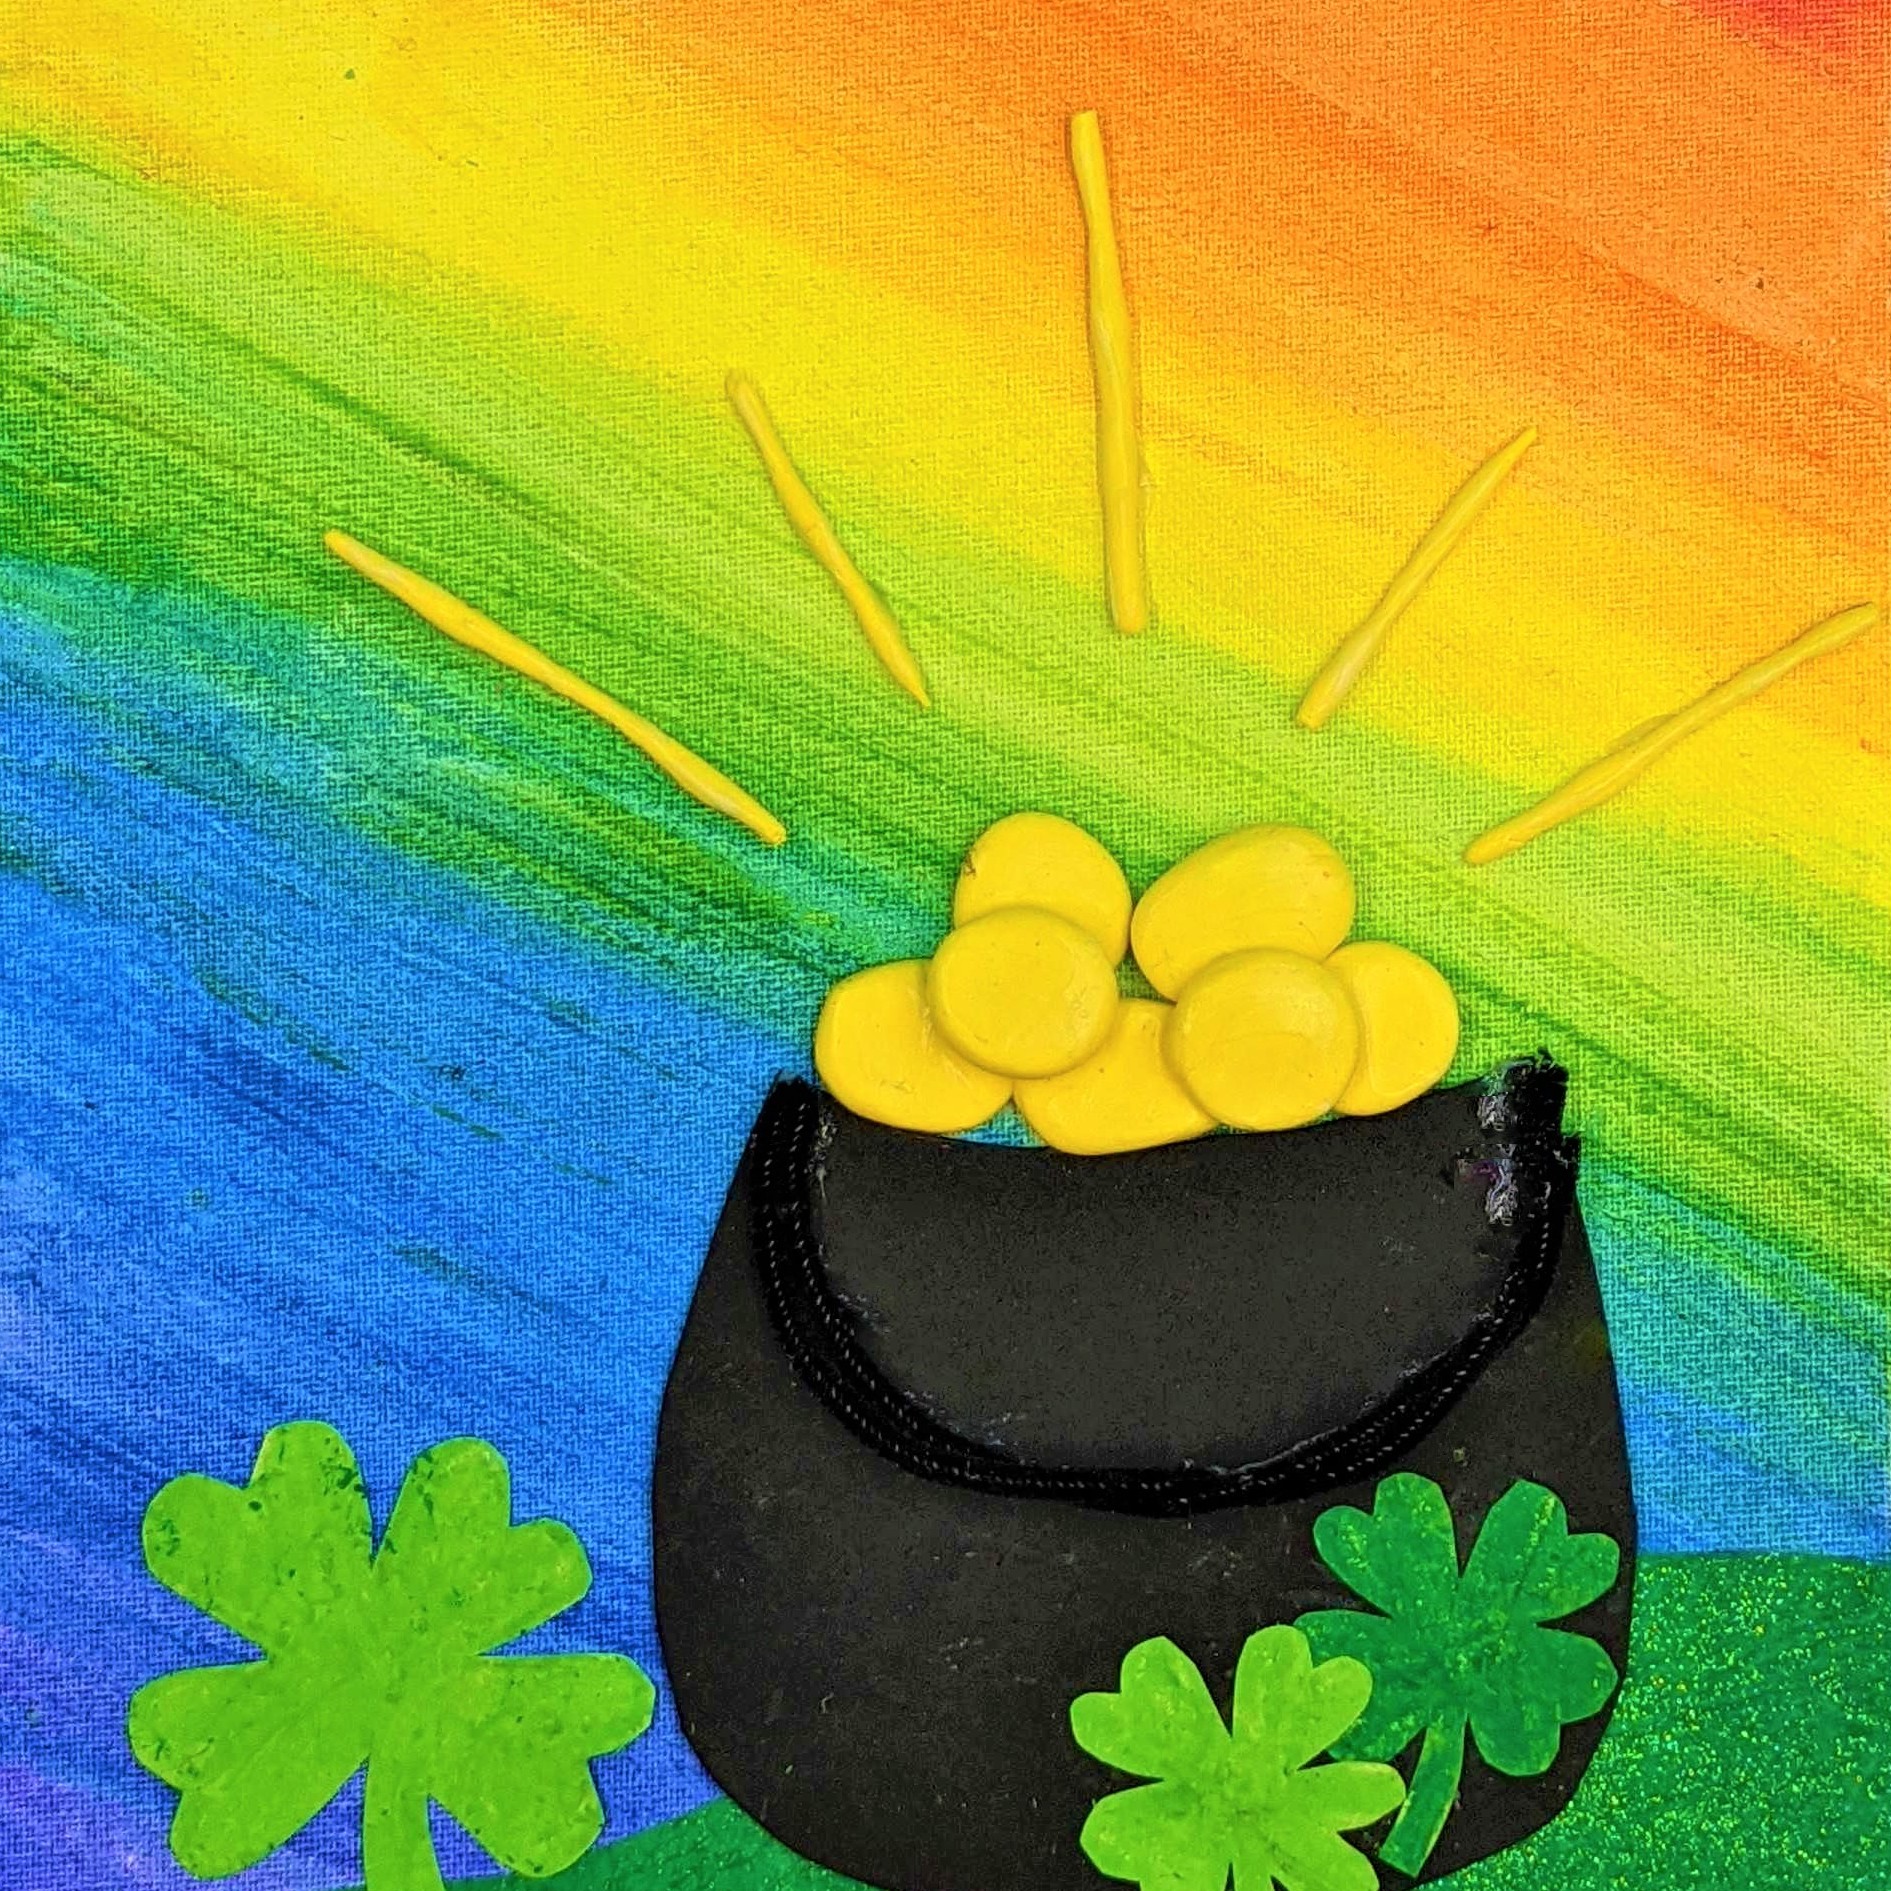 Kidcreate Studio - Fayetteville, St. Patrick's Day Rainbow on Canvas Art Project